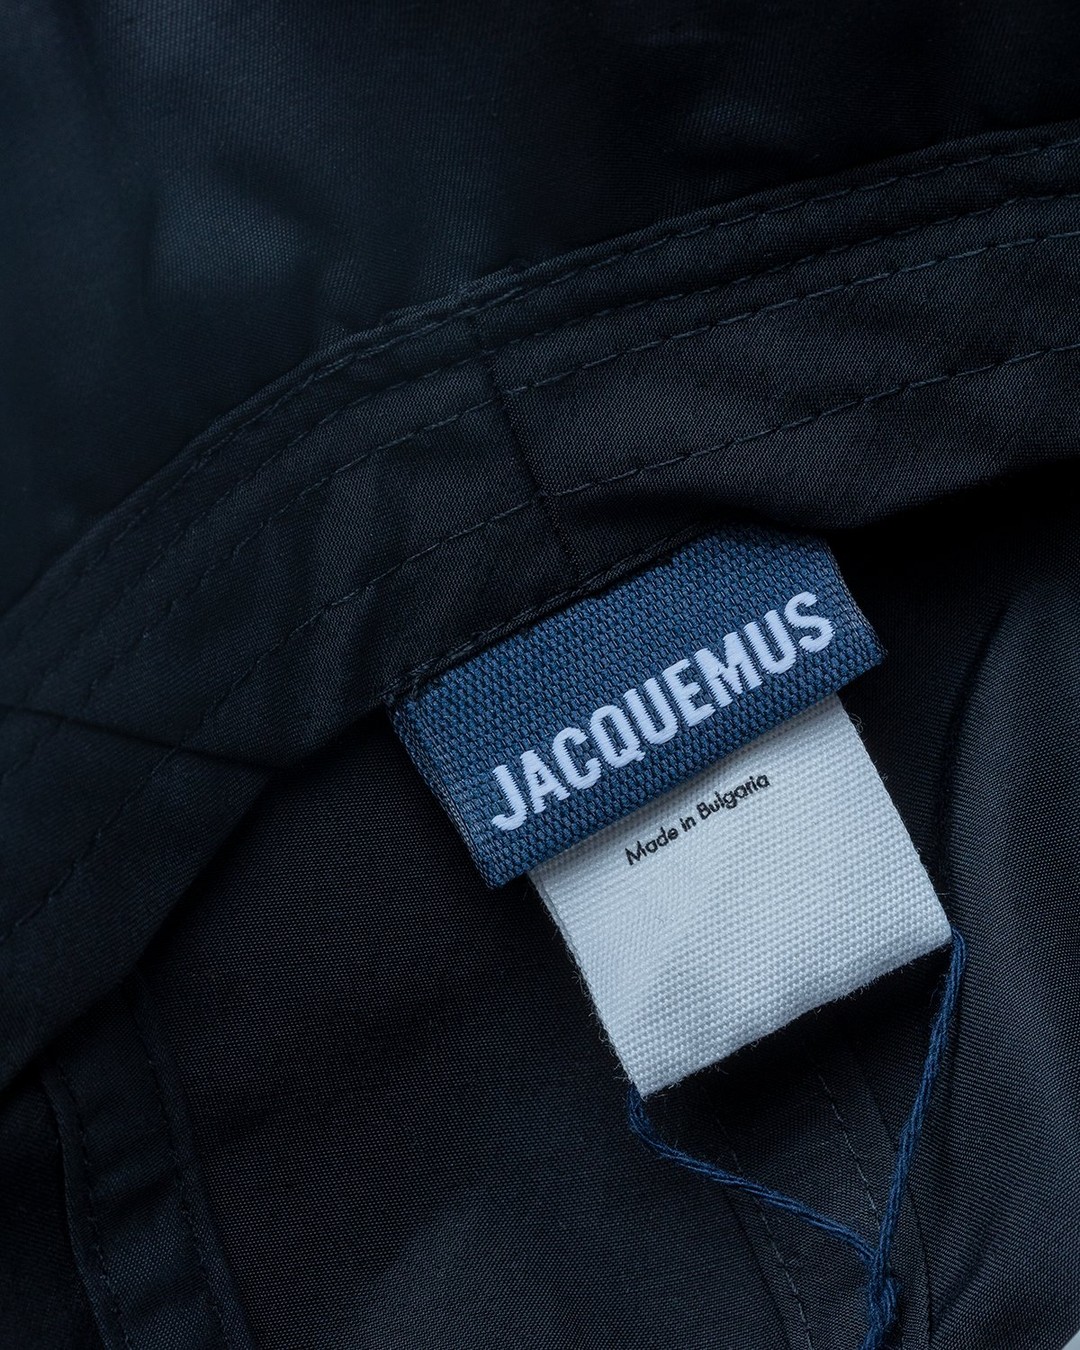 JACQUEMUS – La Casquette Cagoule Black - Hats - Black - Image 5